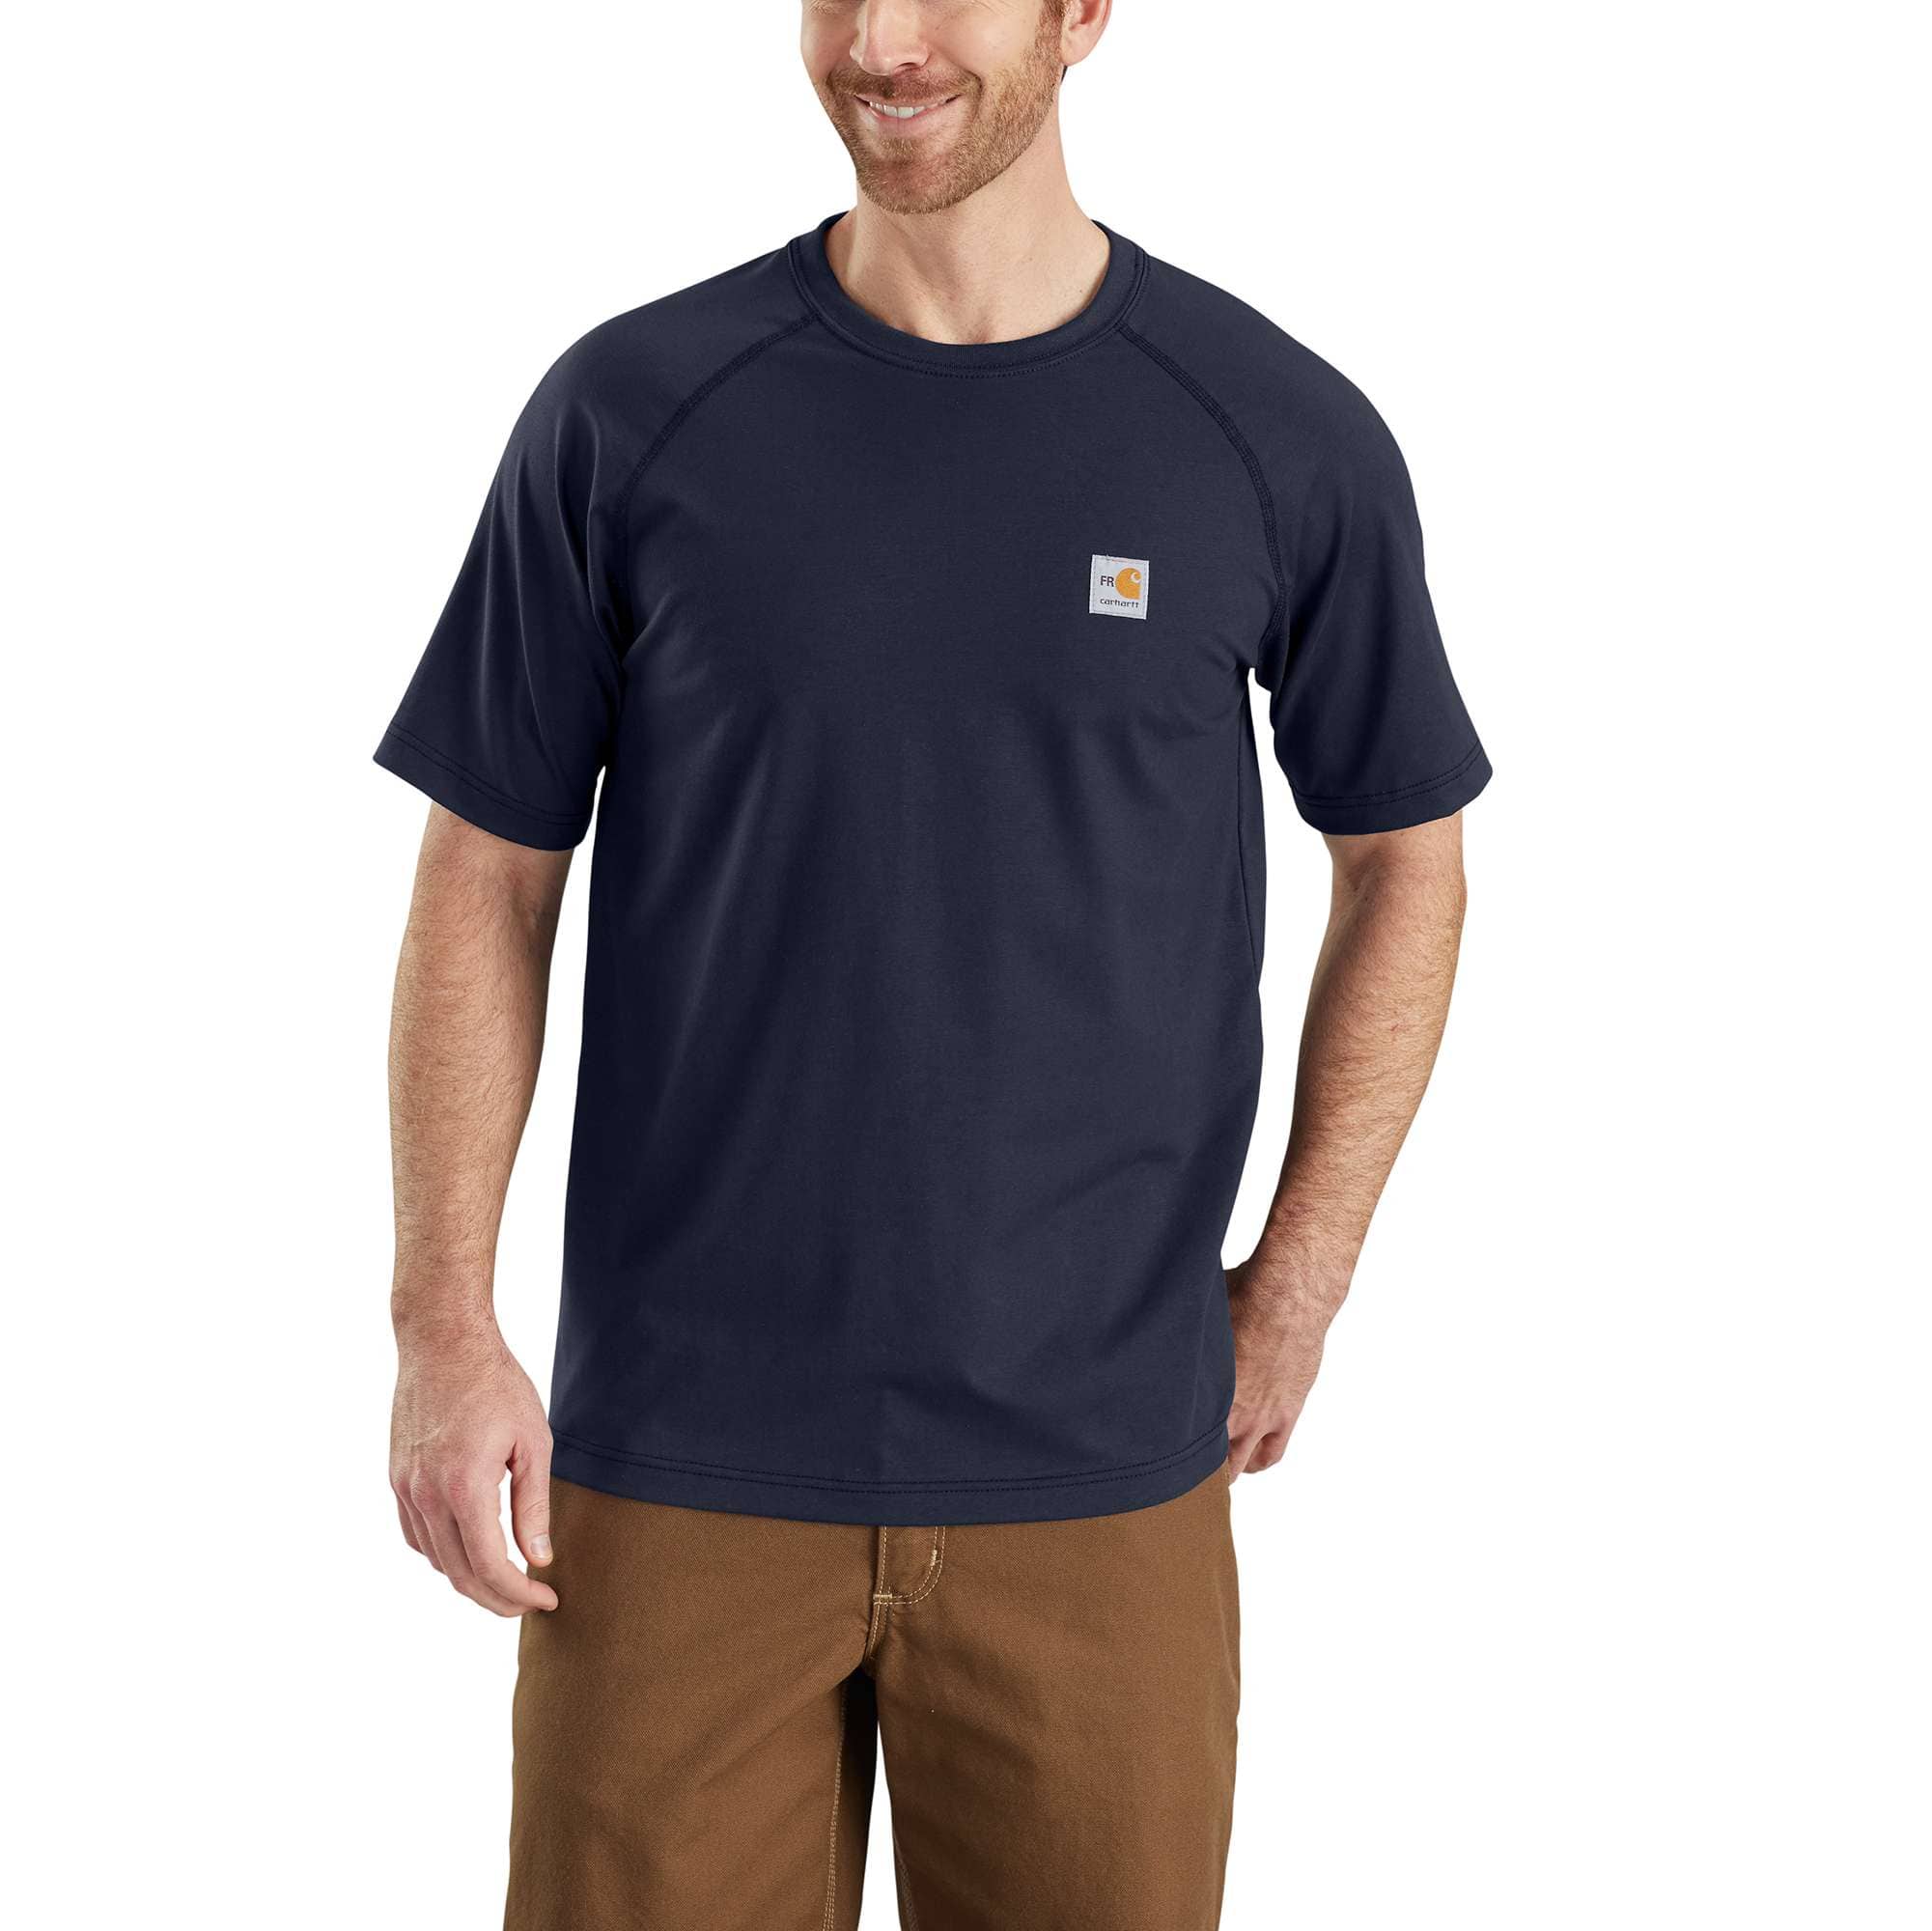 Le t-shirt pochette logo, Carhartt, T-shirts à Logos et Typos pour Homme